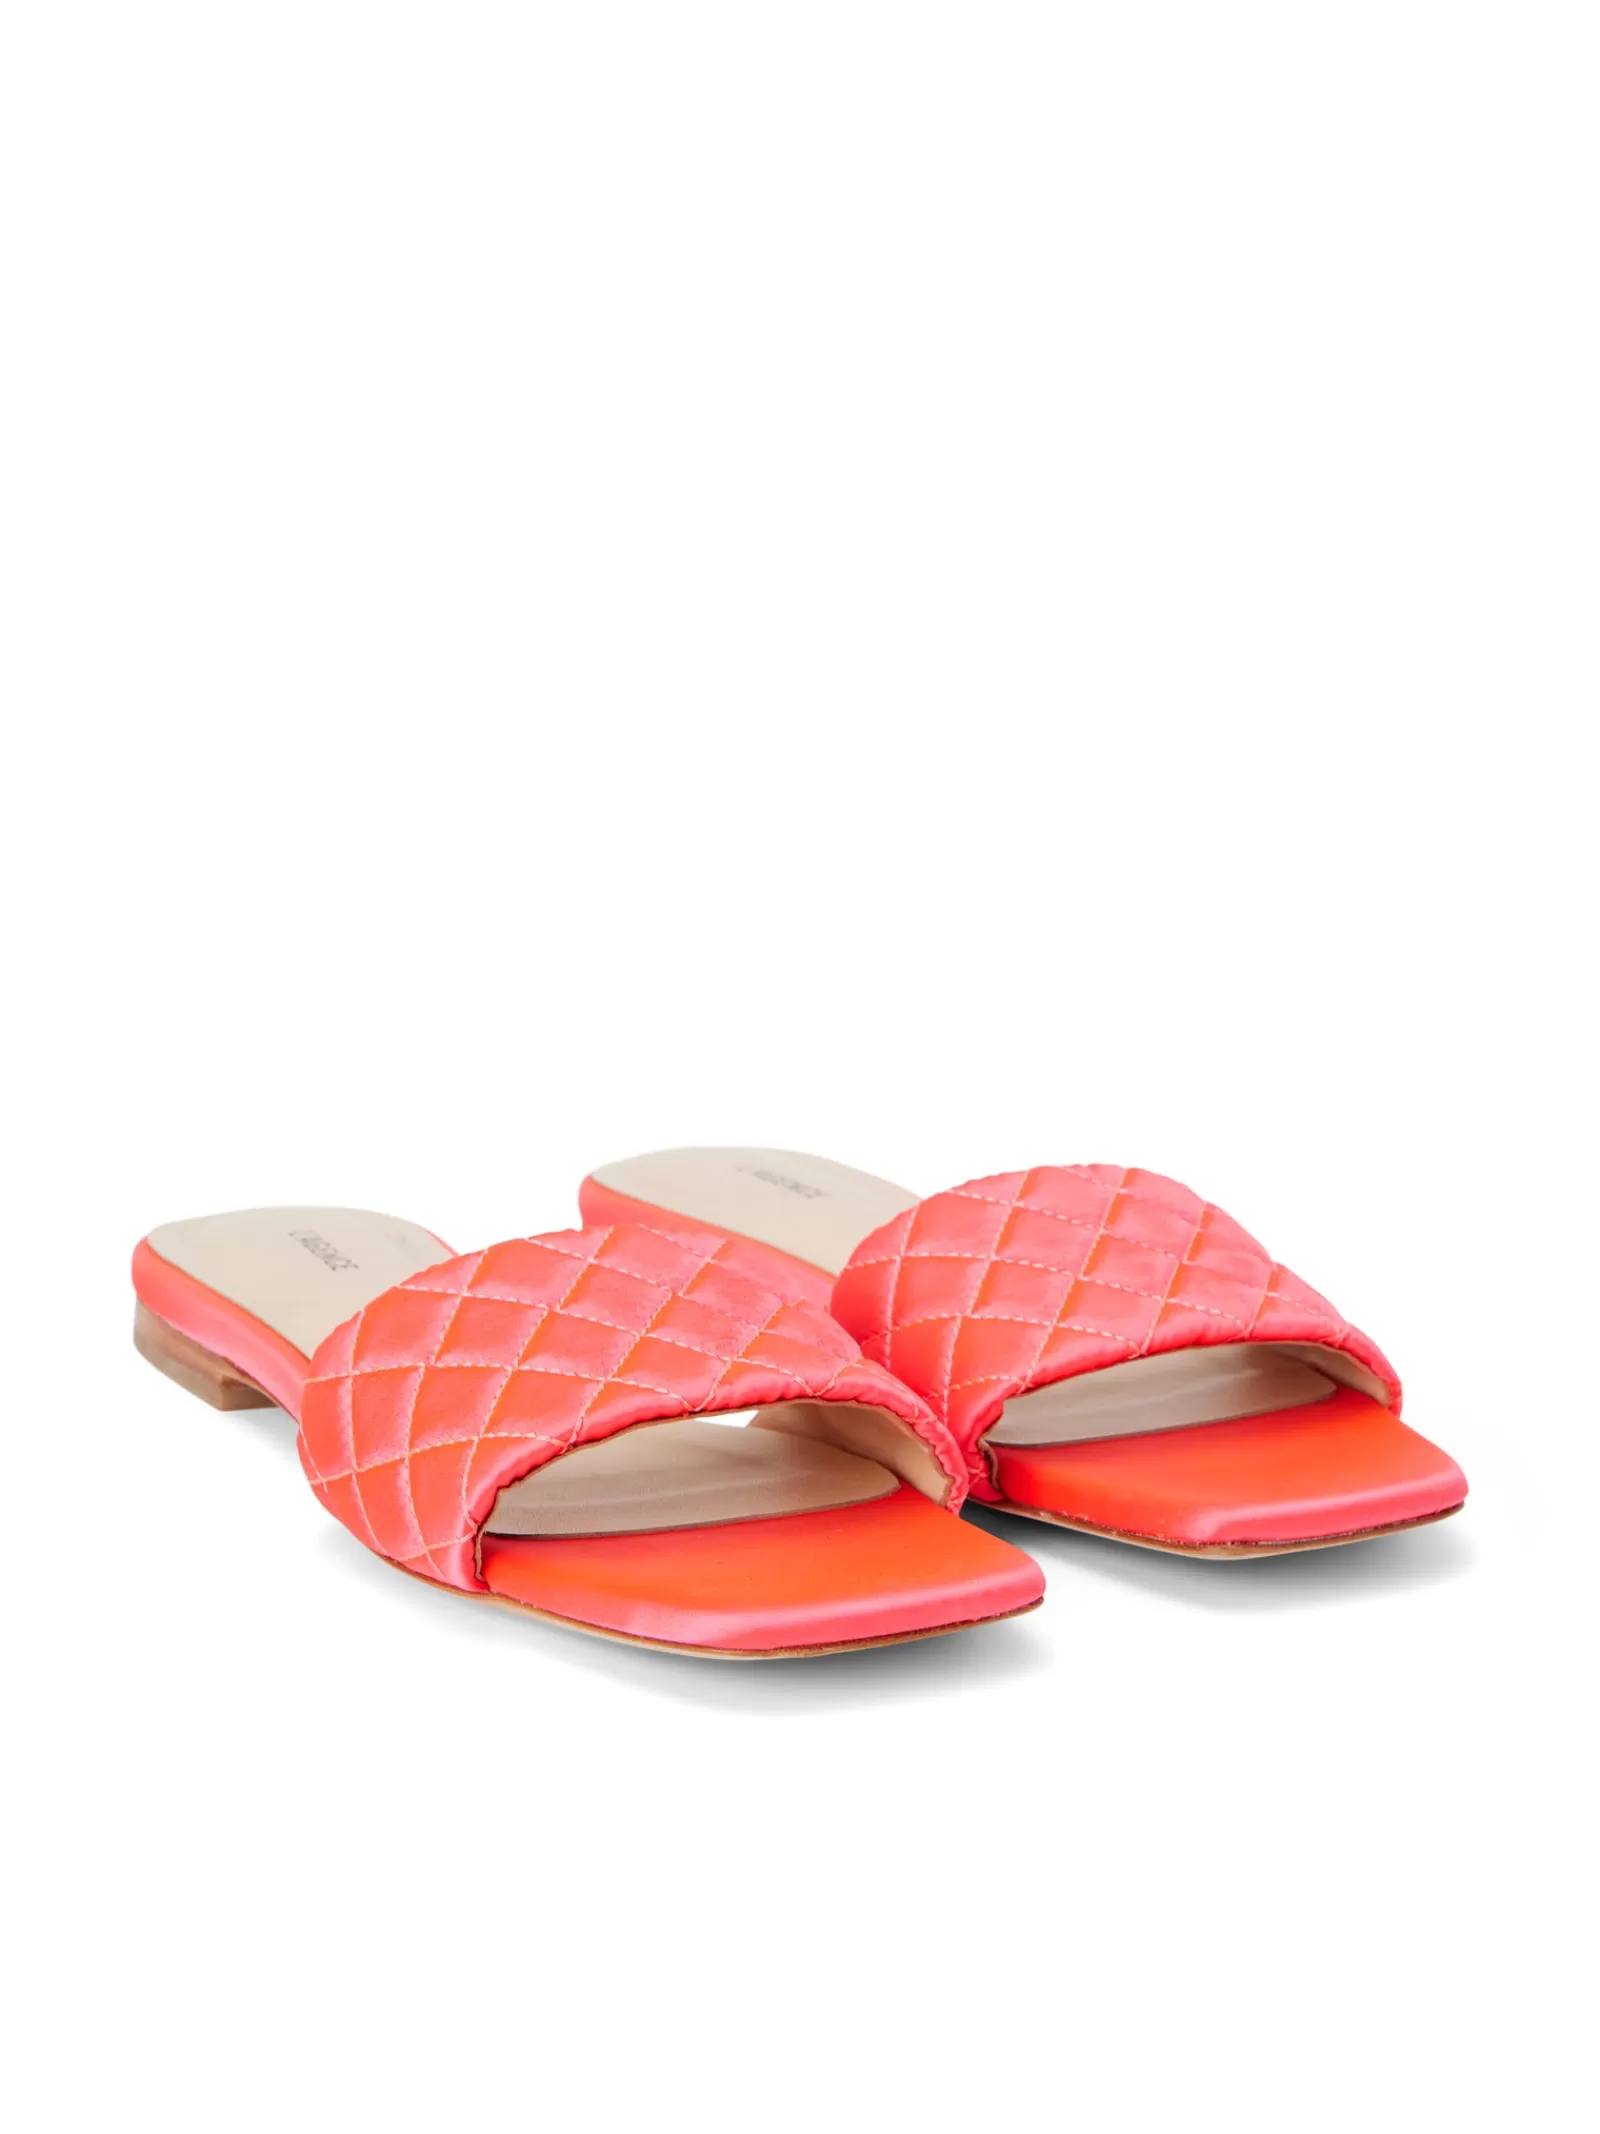 L'AGENCE Aloise Satin Slide Sandal< Spring Collection | Sandals & Wedges